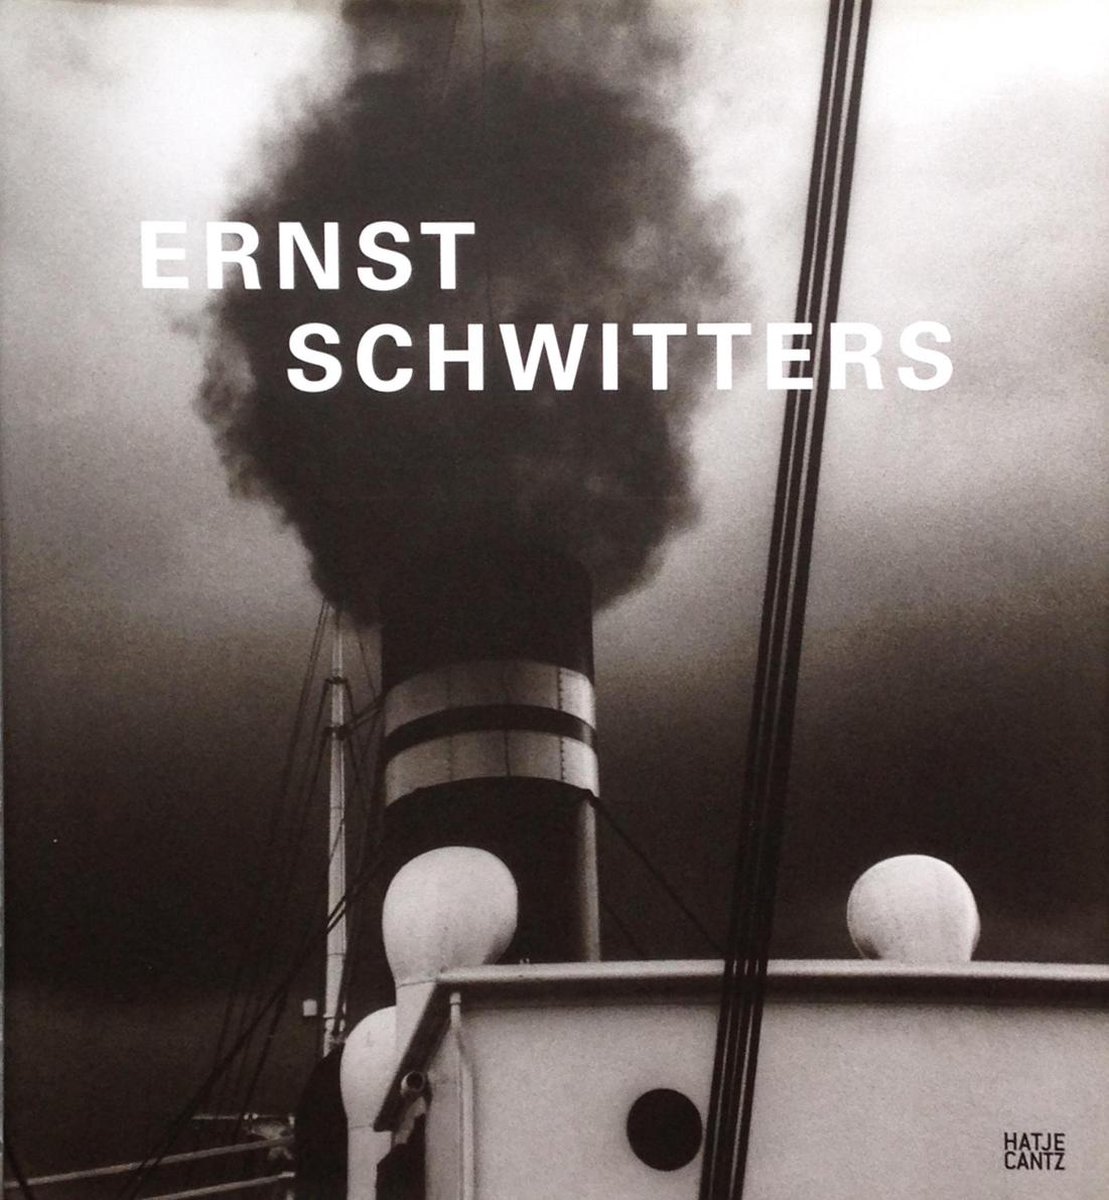 Ernst Schwitters in Norway